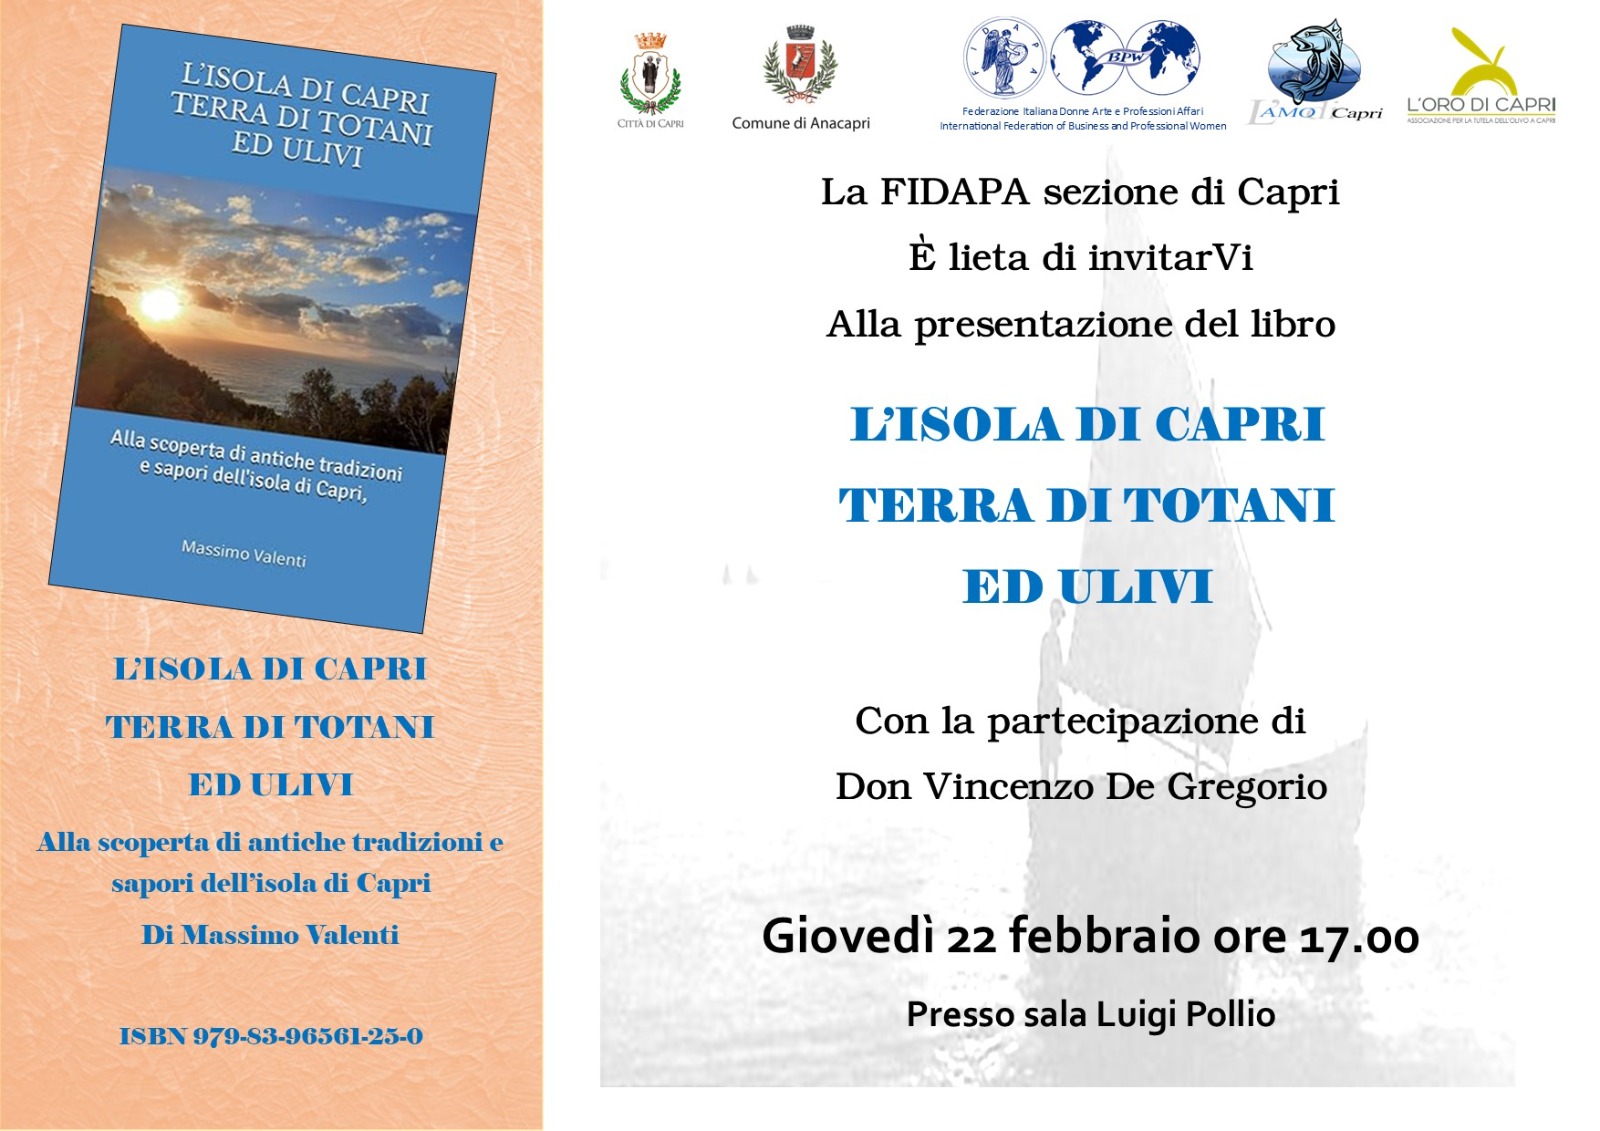 Iniziativa della Fidapa: presentazione del libro di Massimo Valenti “L’isola di Capri terra di totani ed ulivi”